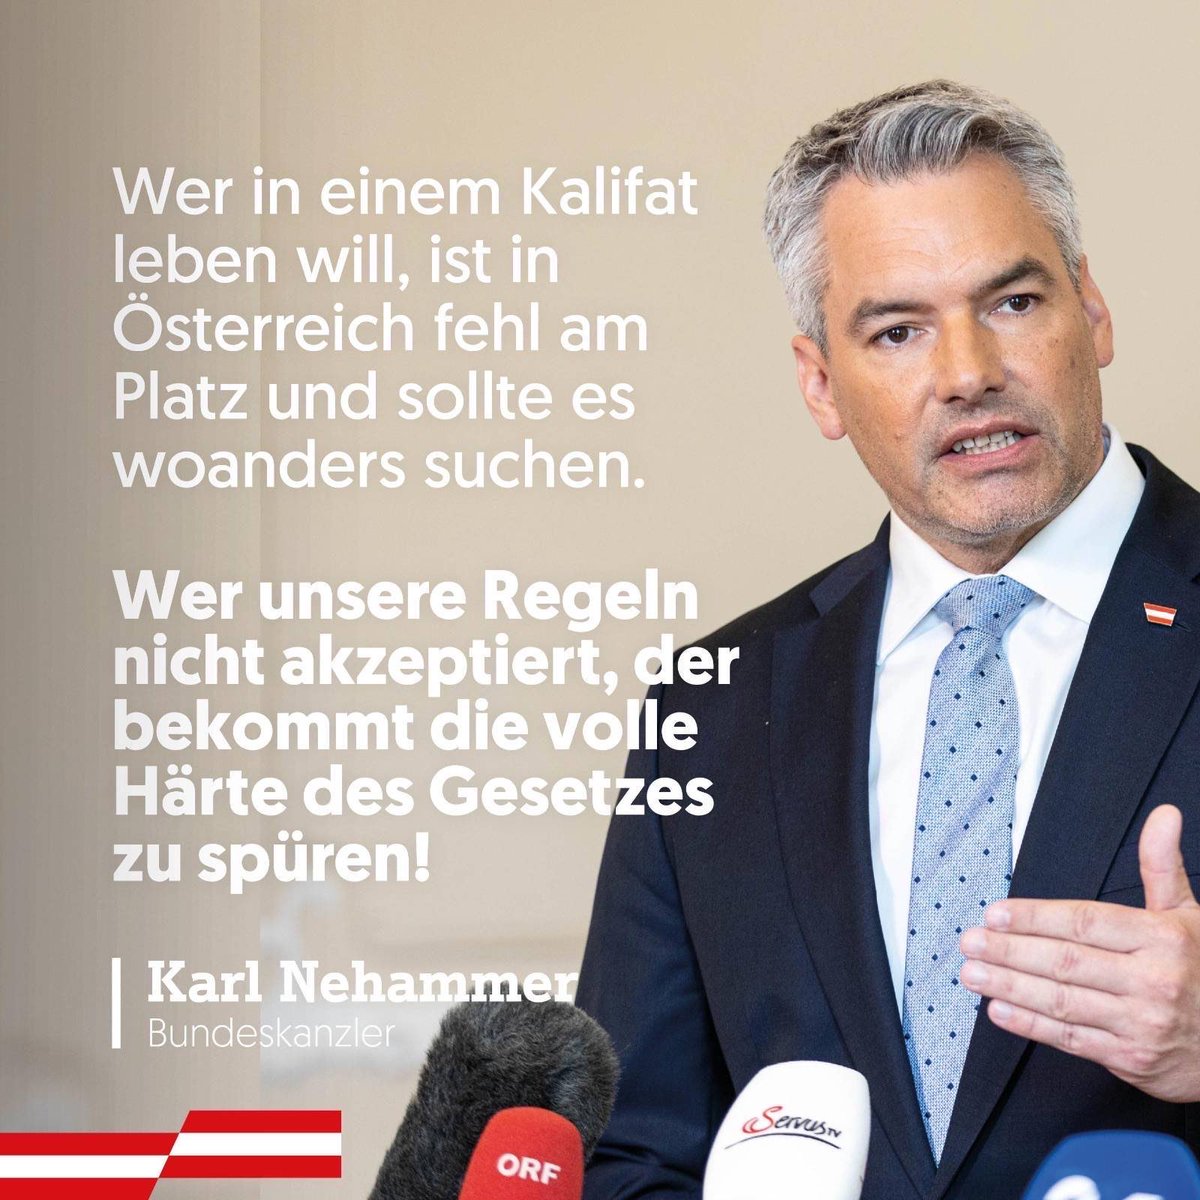 Für Österreich ist klar: Wer in einem Kalifat leben will, der ist in unserem Land fehl am Platz! profil.at/meinung/kein-k…